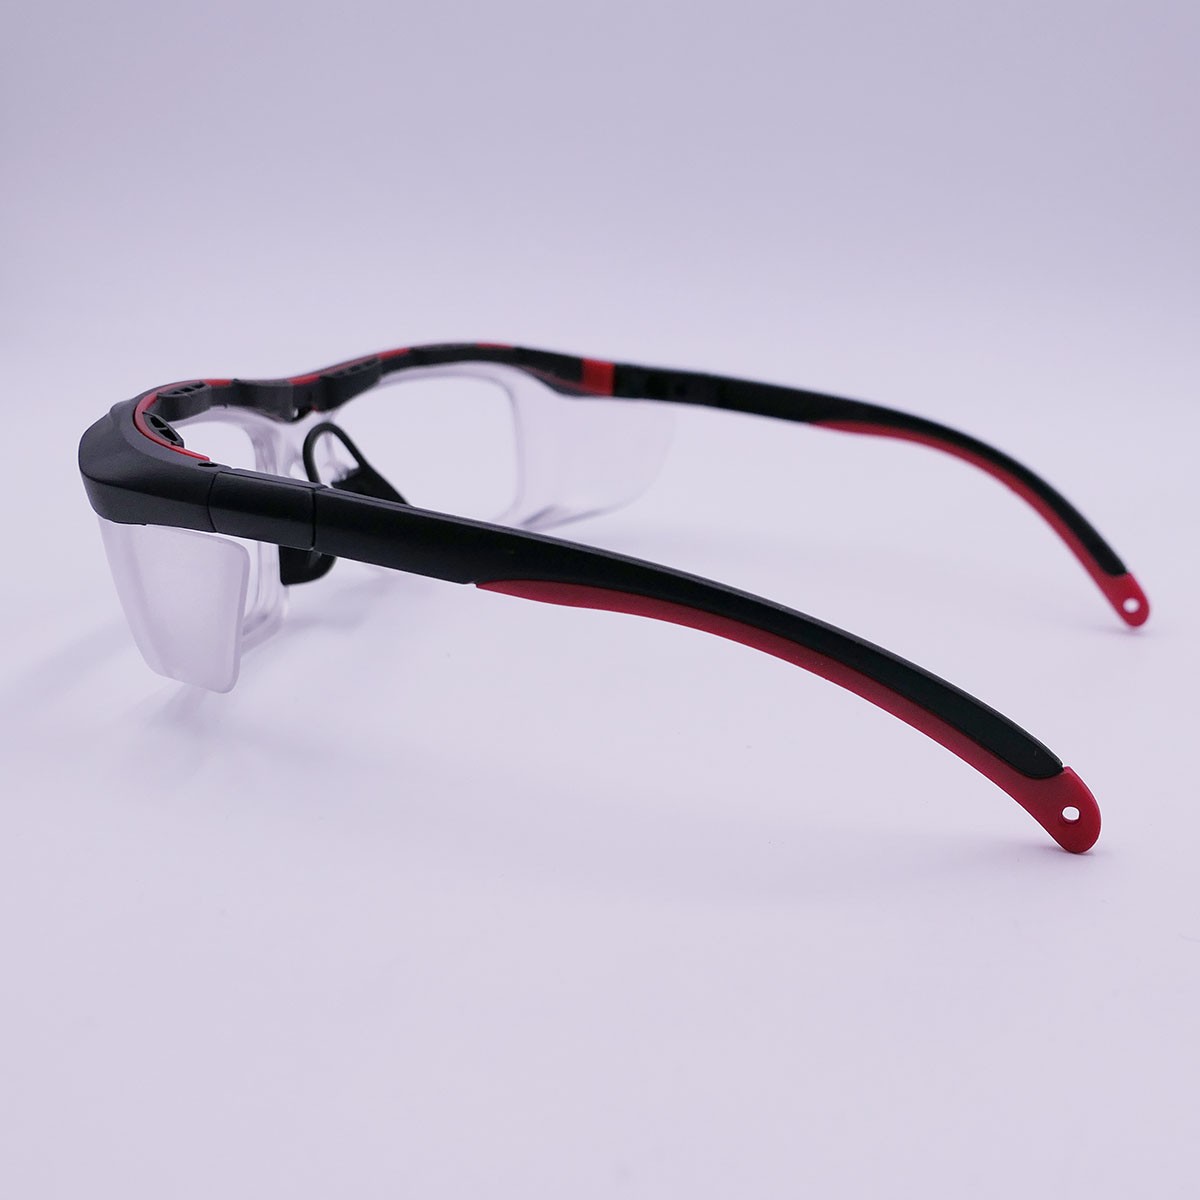 護目鏡-可更換鏡片、鏡腳可調整角度之防護眼鏡